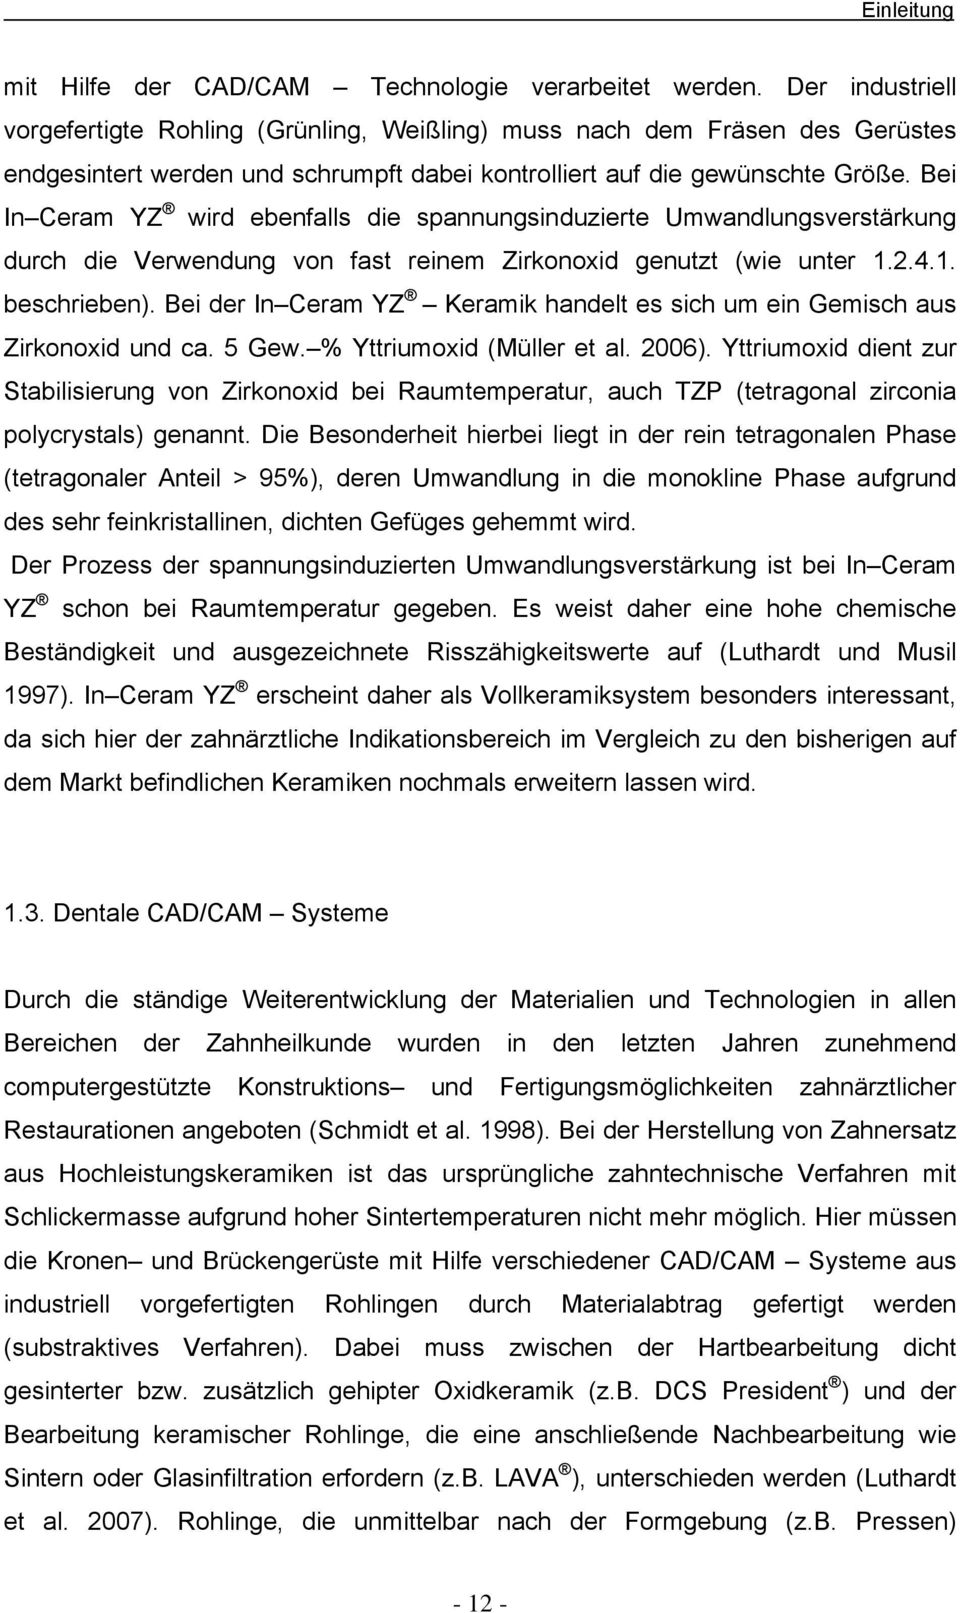 Bei In Ceram YZ wird ebenfalls die spannungsinduzierte Umwandlungsverstärkung durch die Verwendung von fast reinem Zirkonoxid genutzt (wie unter 1.2.4.1. beschrieben).